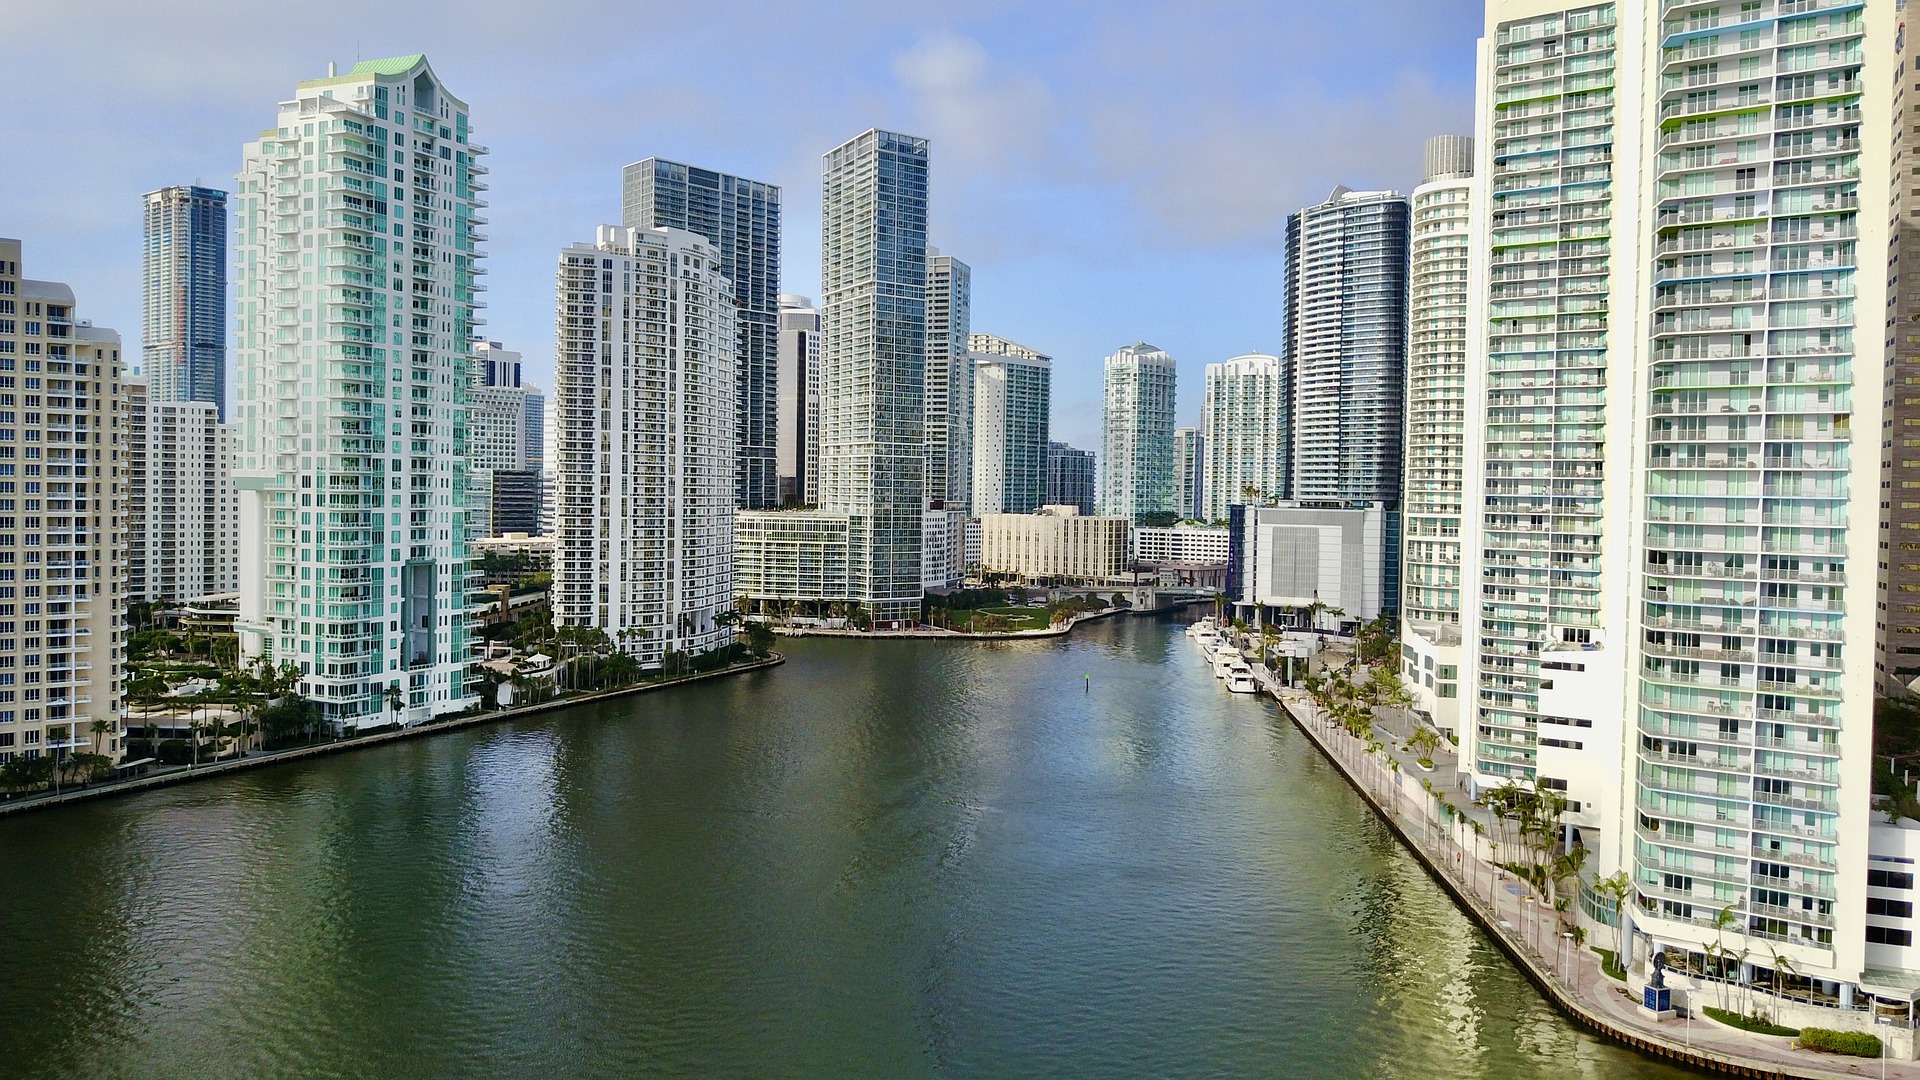 Alquileres de oficinas tampoco paran de aumentar en Miami